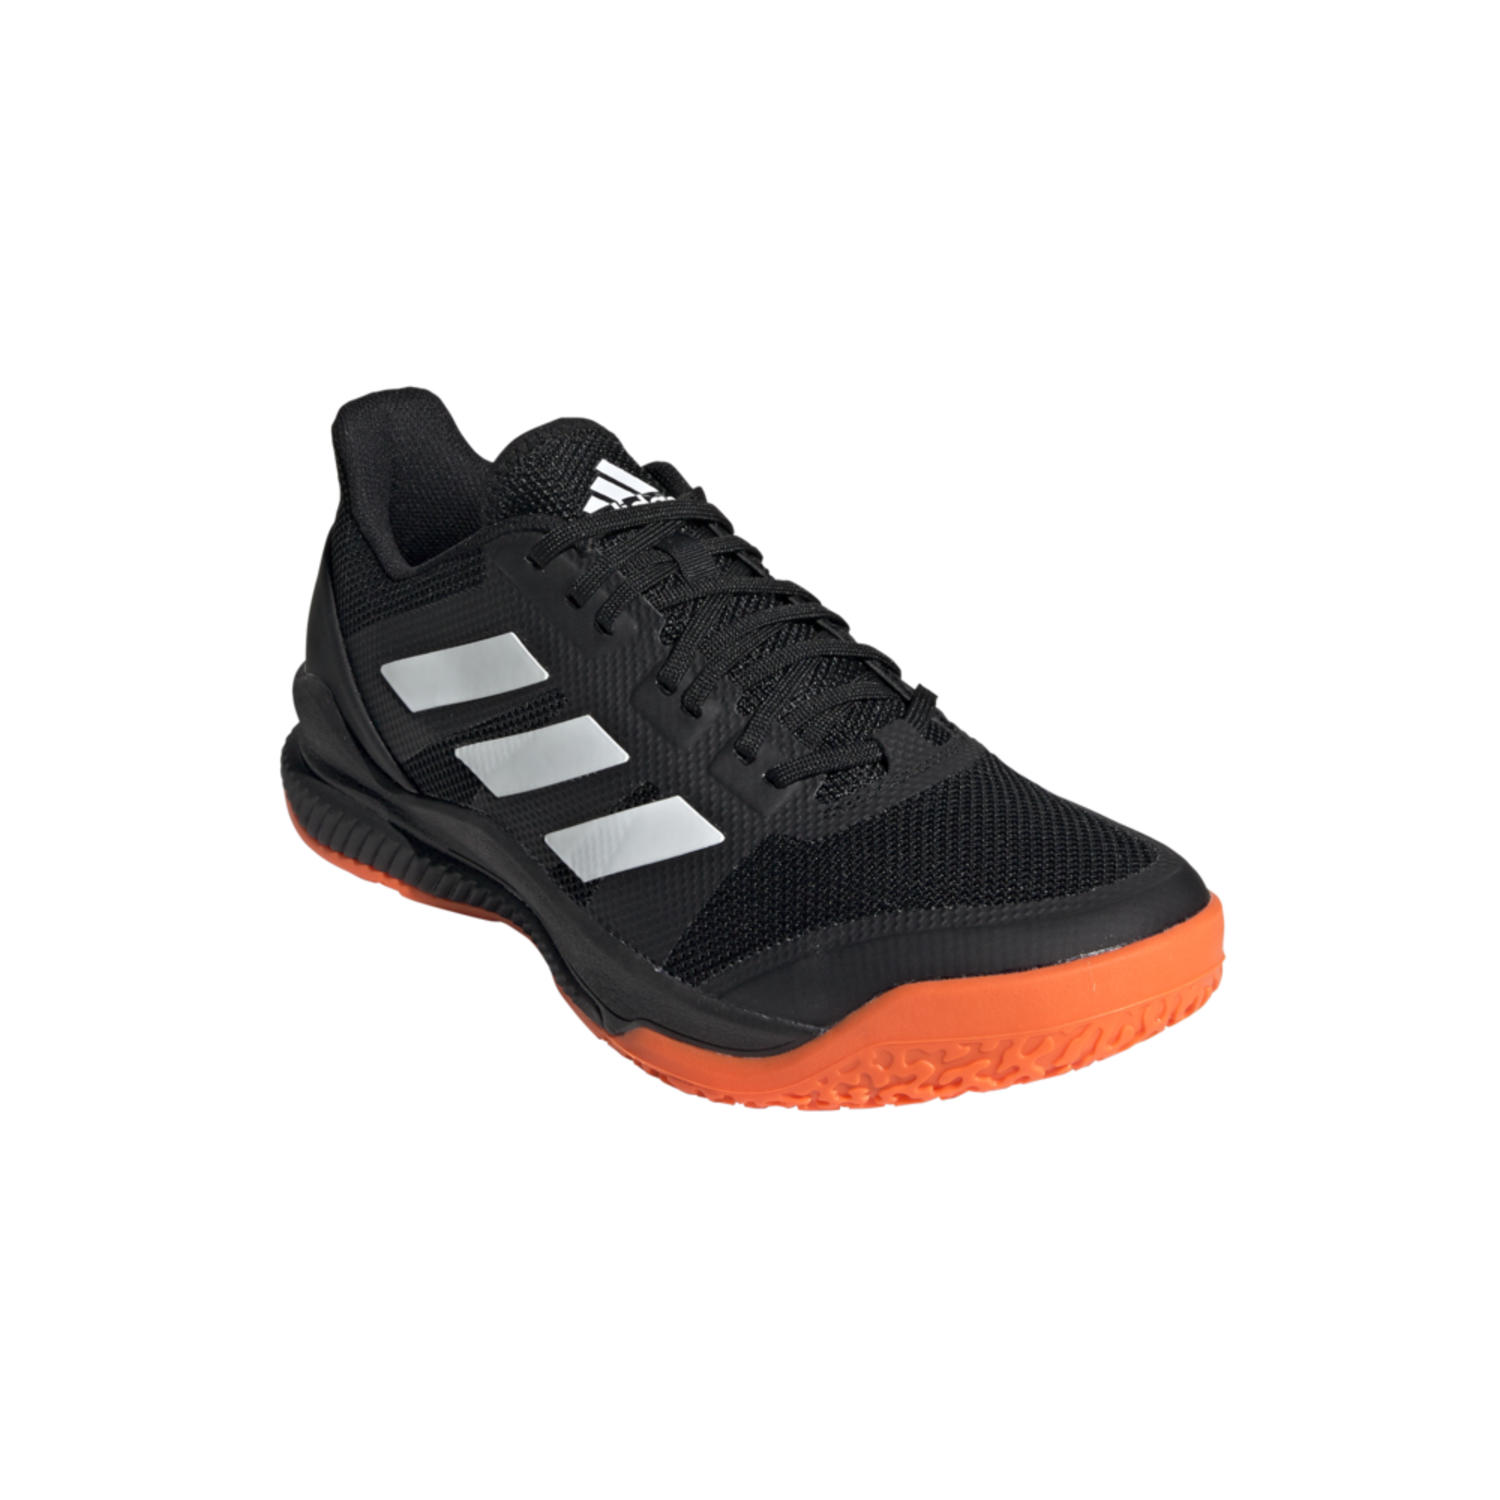 desarrollo de Hierbas folleto Adidas Indoor Stabil Bounce 19/20 Black/White shoes, order now! -  Hockeypoint